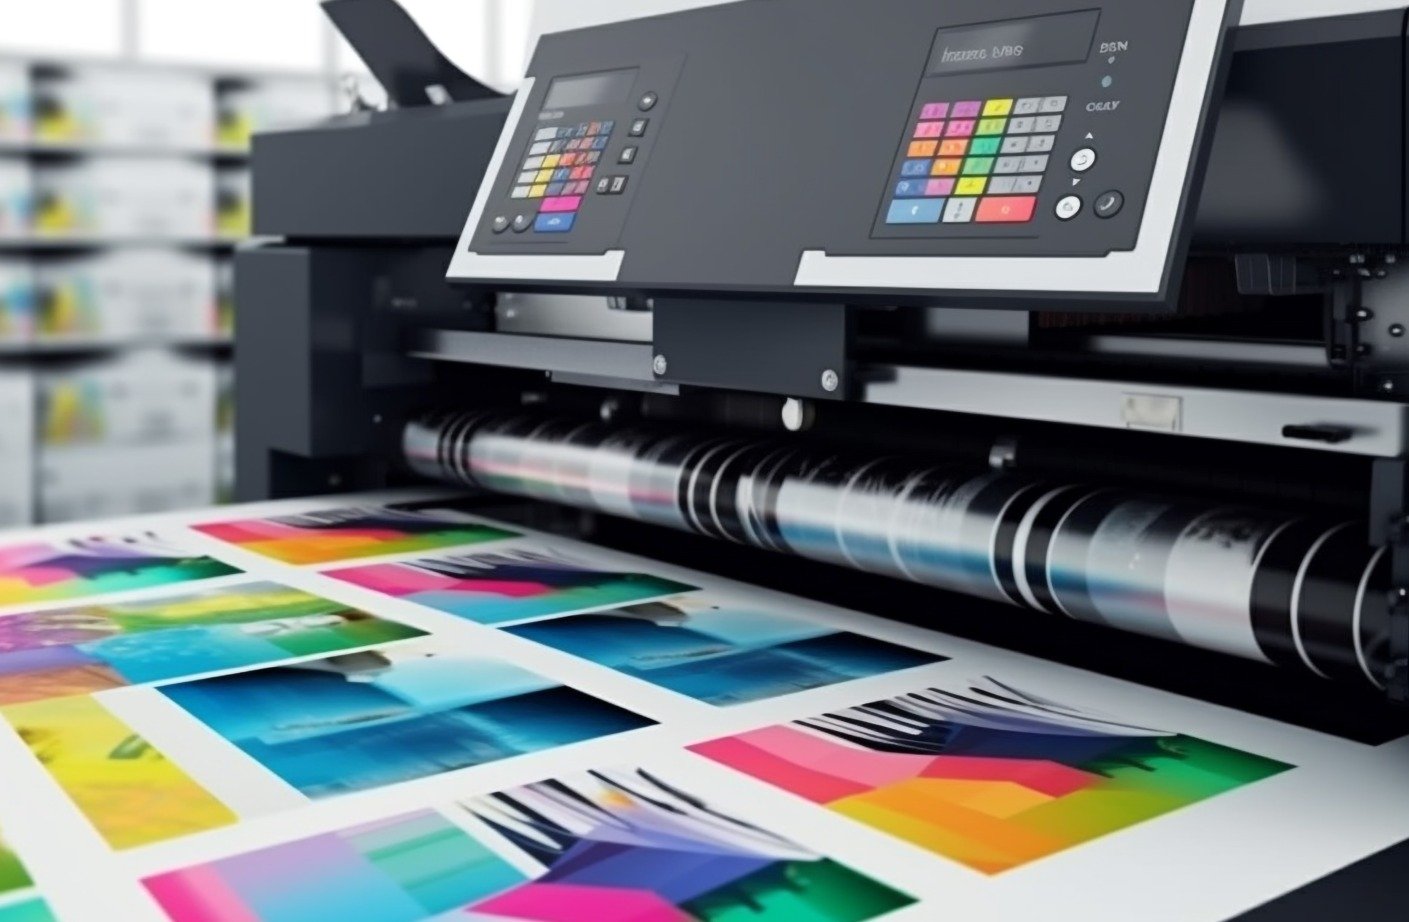 a impressora moderna produz impressoes multicoloridas geradas com precisao por ia graficos personalizados